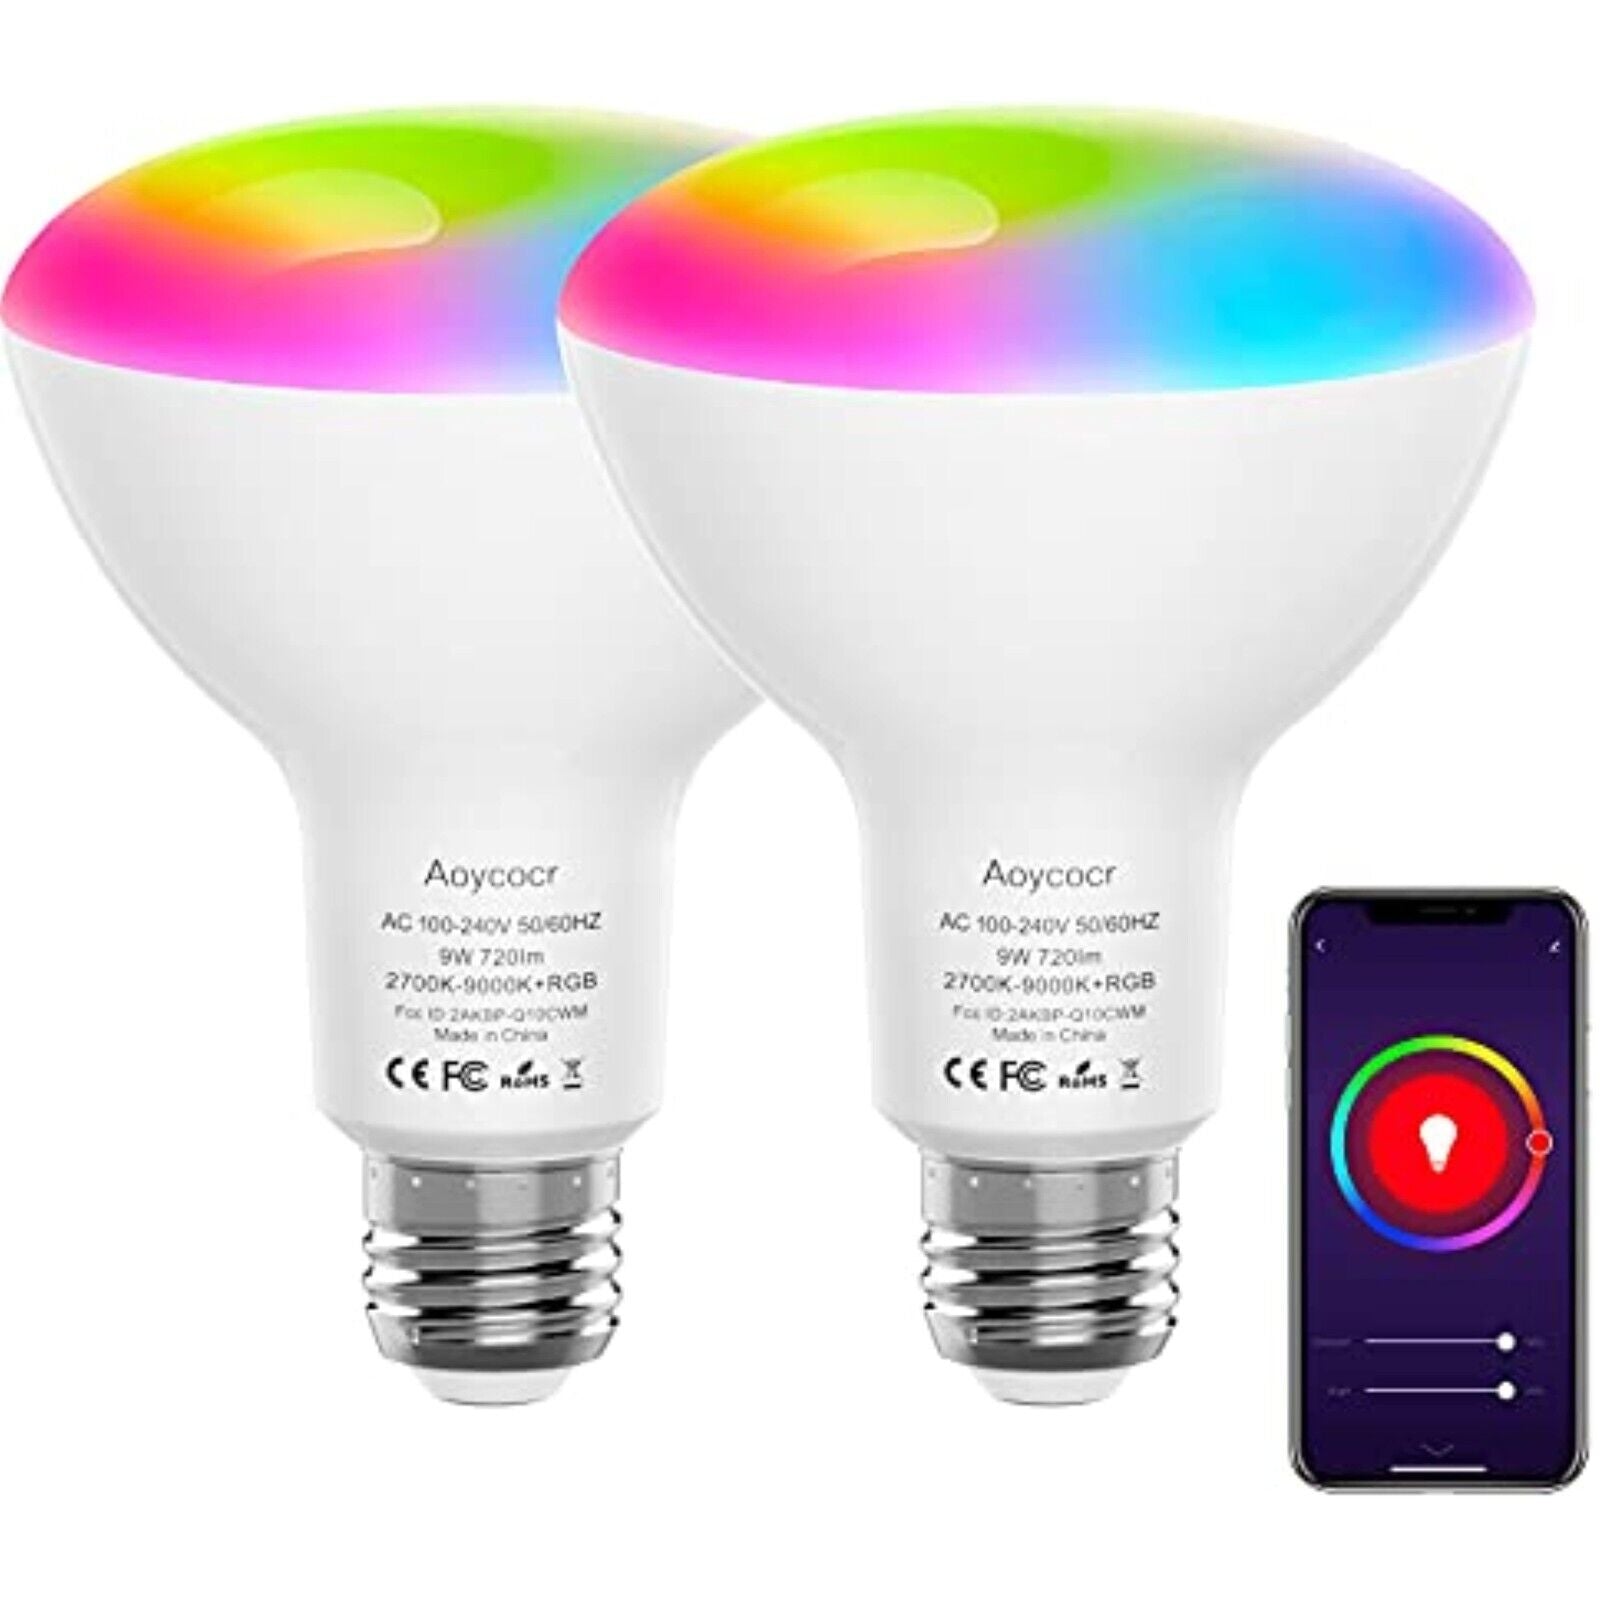 2 Stück x WLAN LED-Lampe E27 9W Birne Dimmbar App-Steuerung für Alexa Google